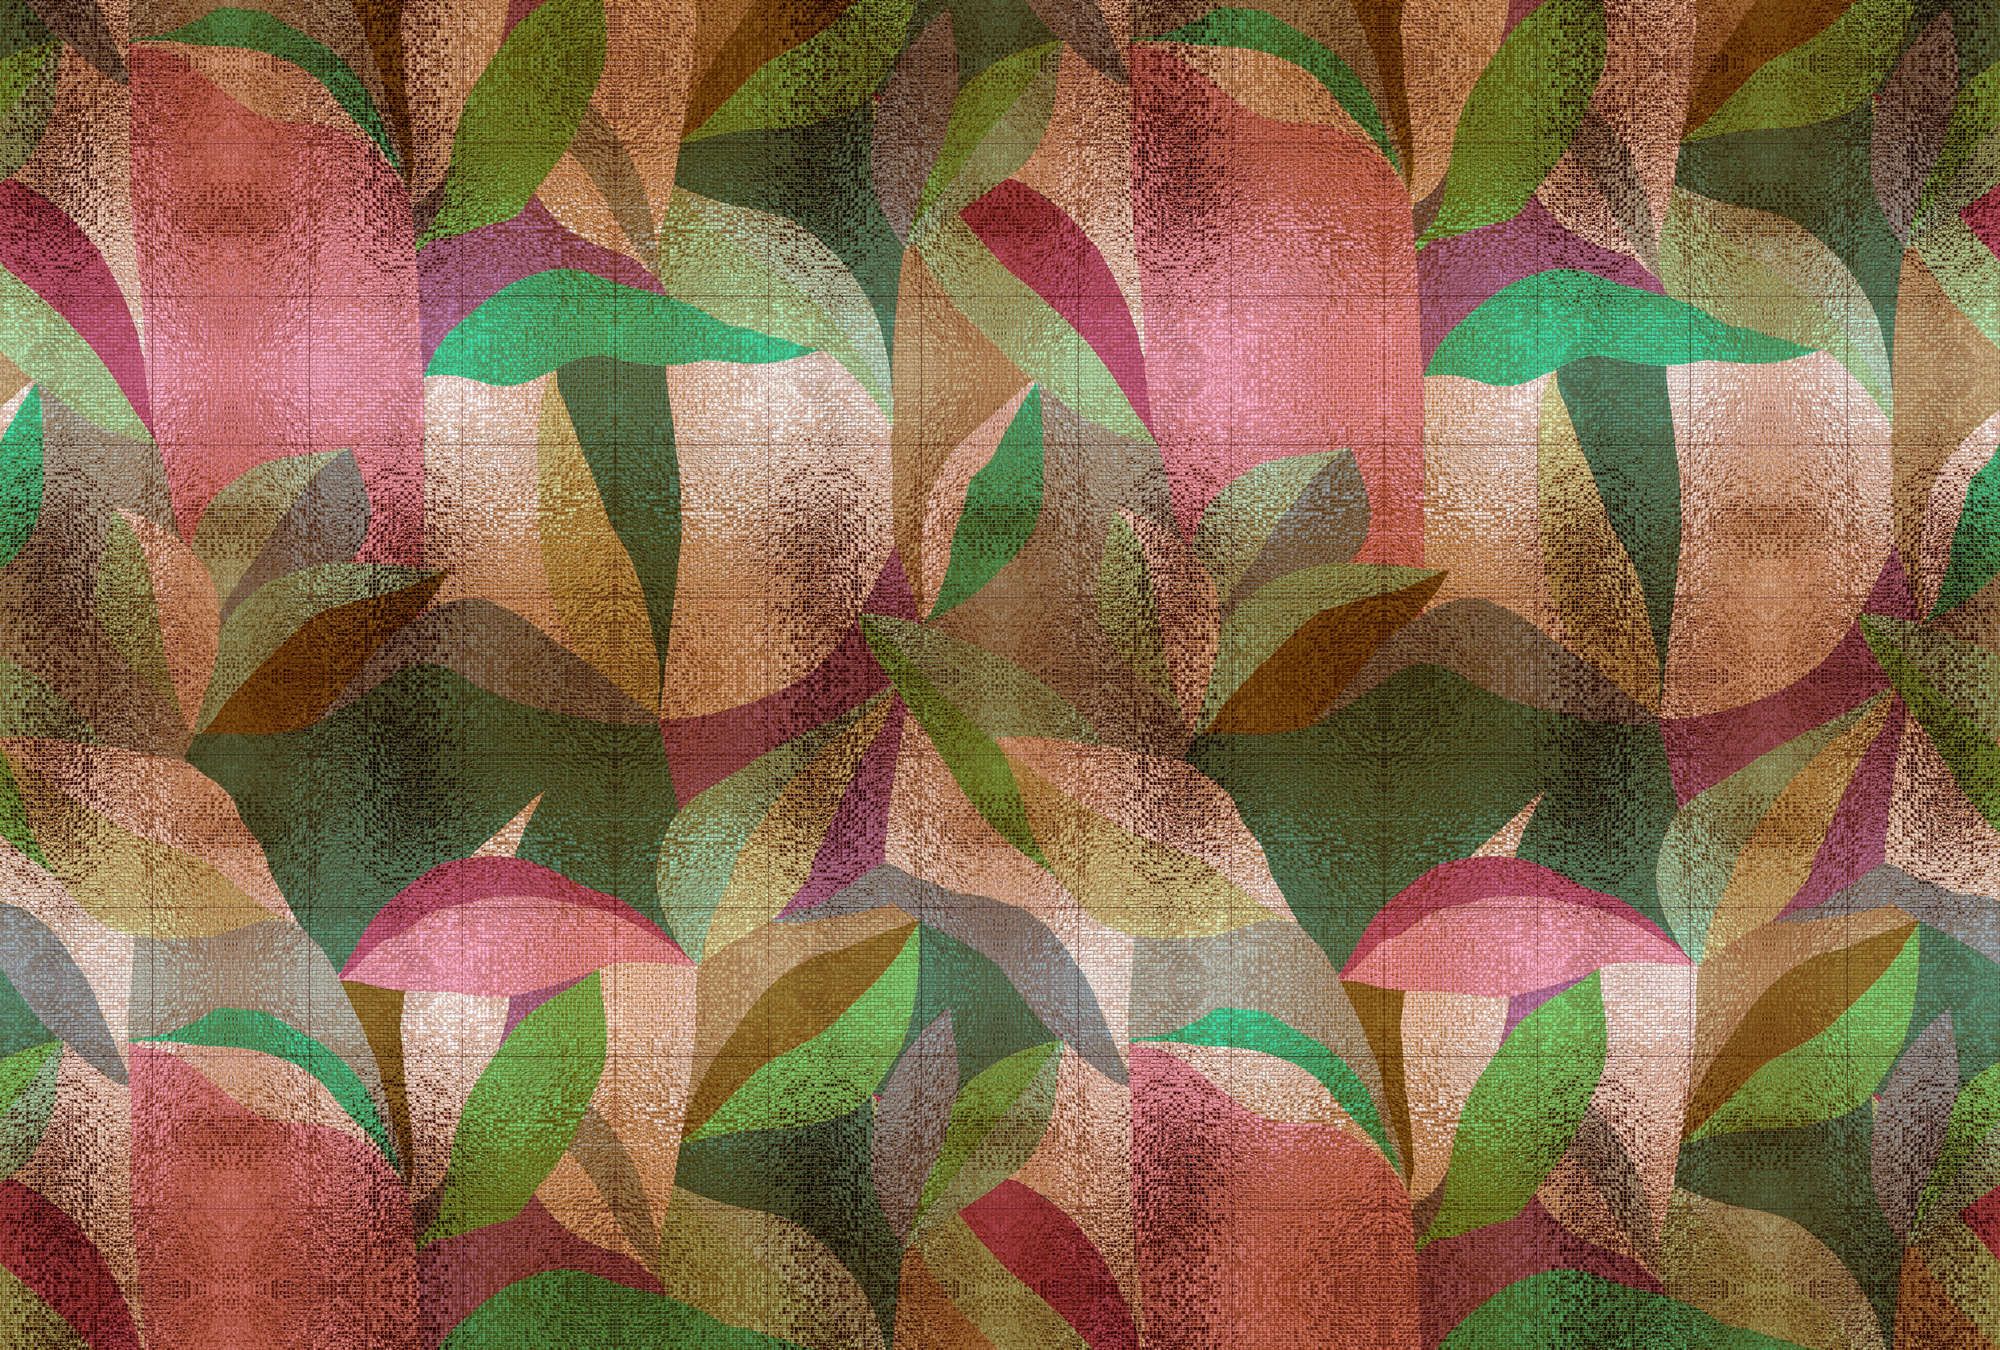             Digital behang »grandezza« - Abstract kleurrijk bladmotief met mozaïekstructuur - Matte, gladde vliesstof
        